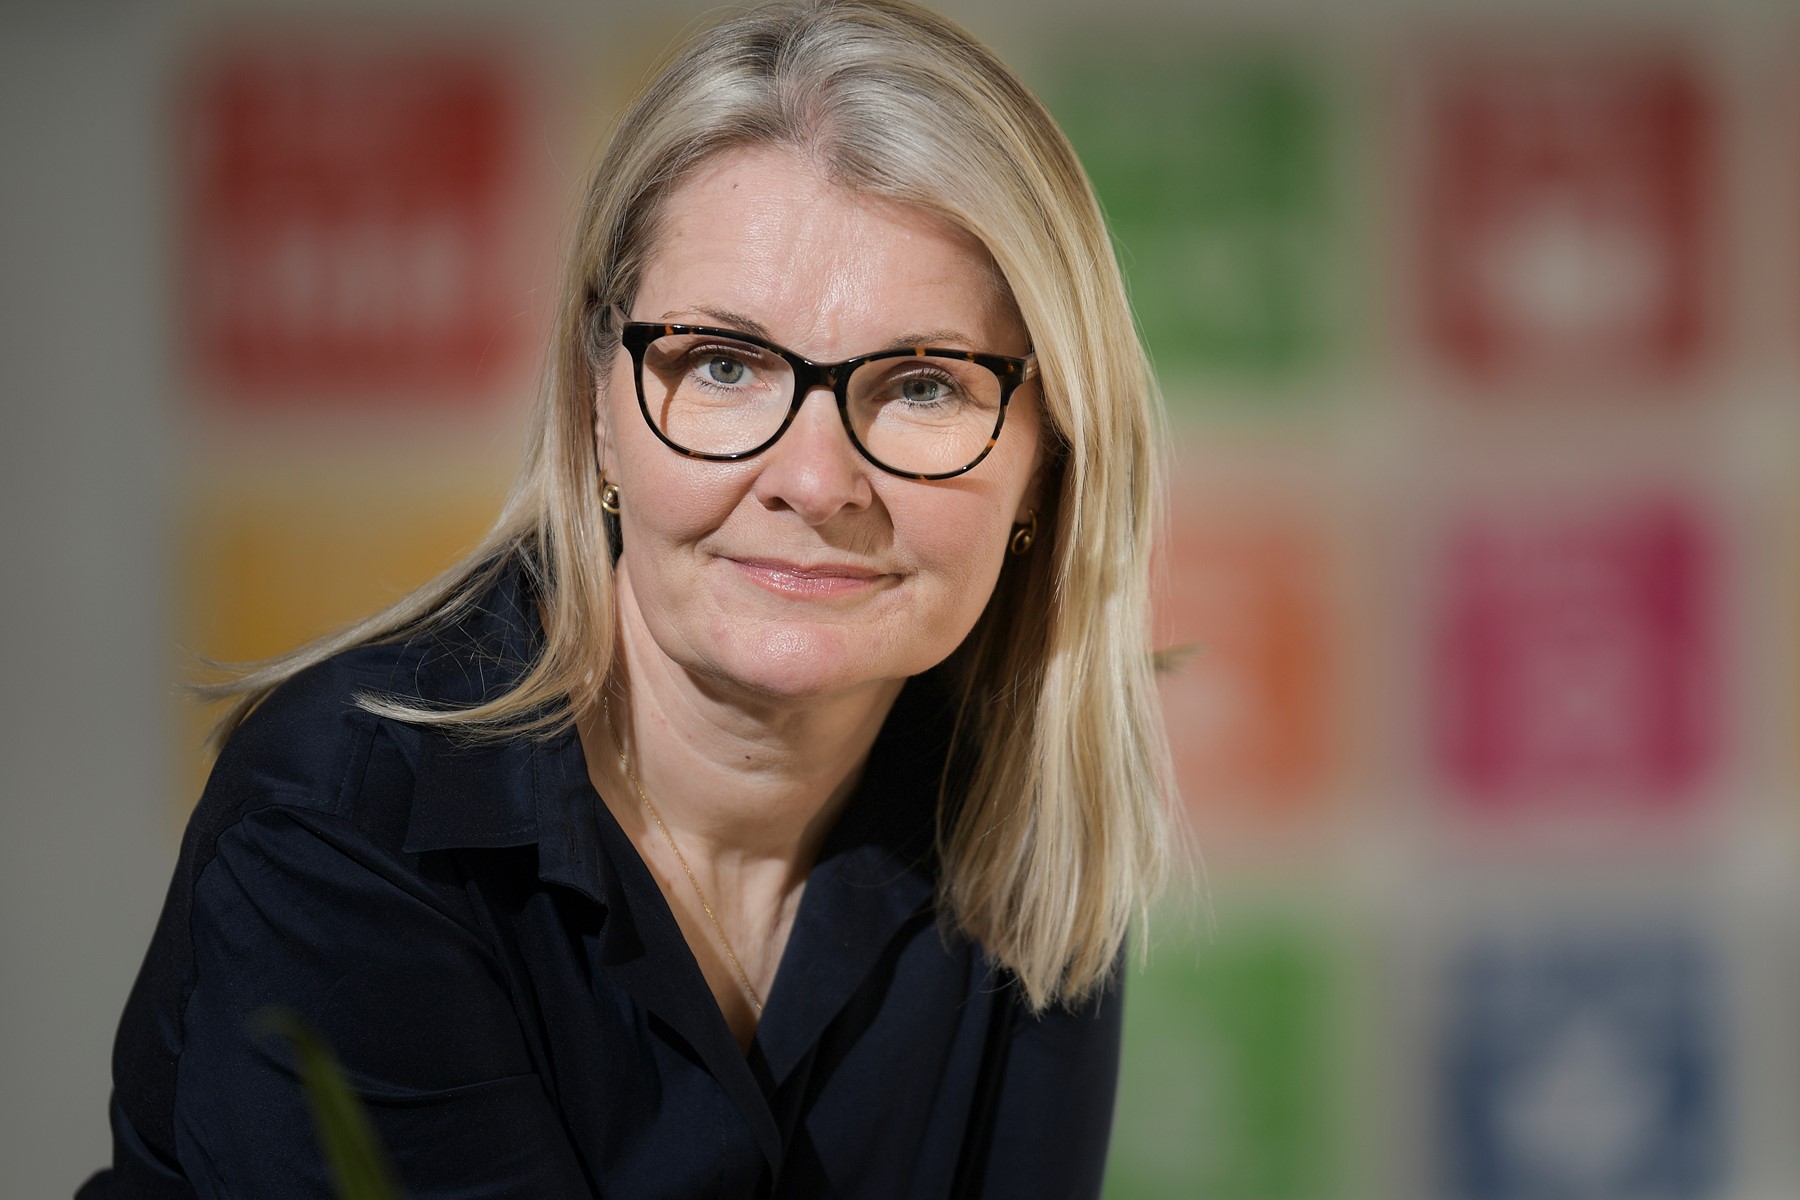 Rikke Christoffersen har i mere end tre år arbejdet som direktør på Aalborg Handelsskole. Før det var hun direktør ved Skanderborg-Odder Center for Uddannelse. Foto: Claus Søndberg.